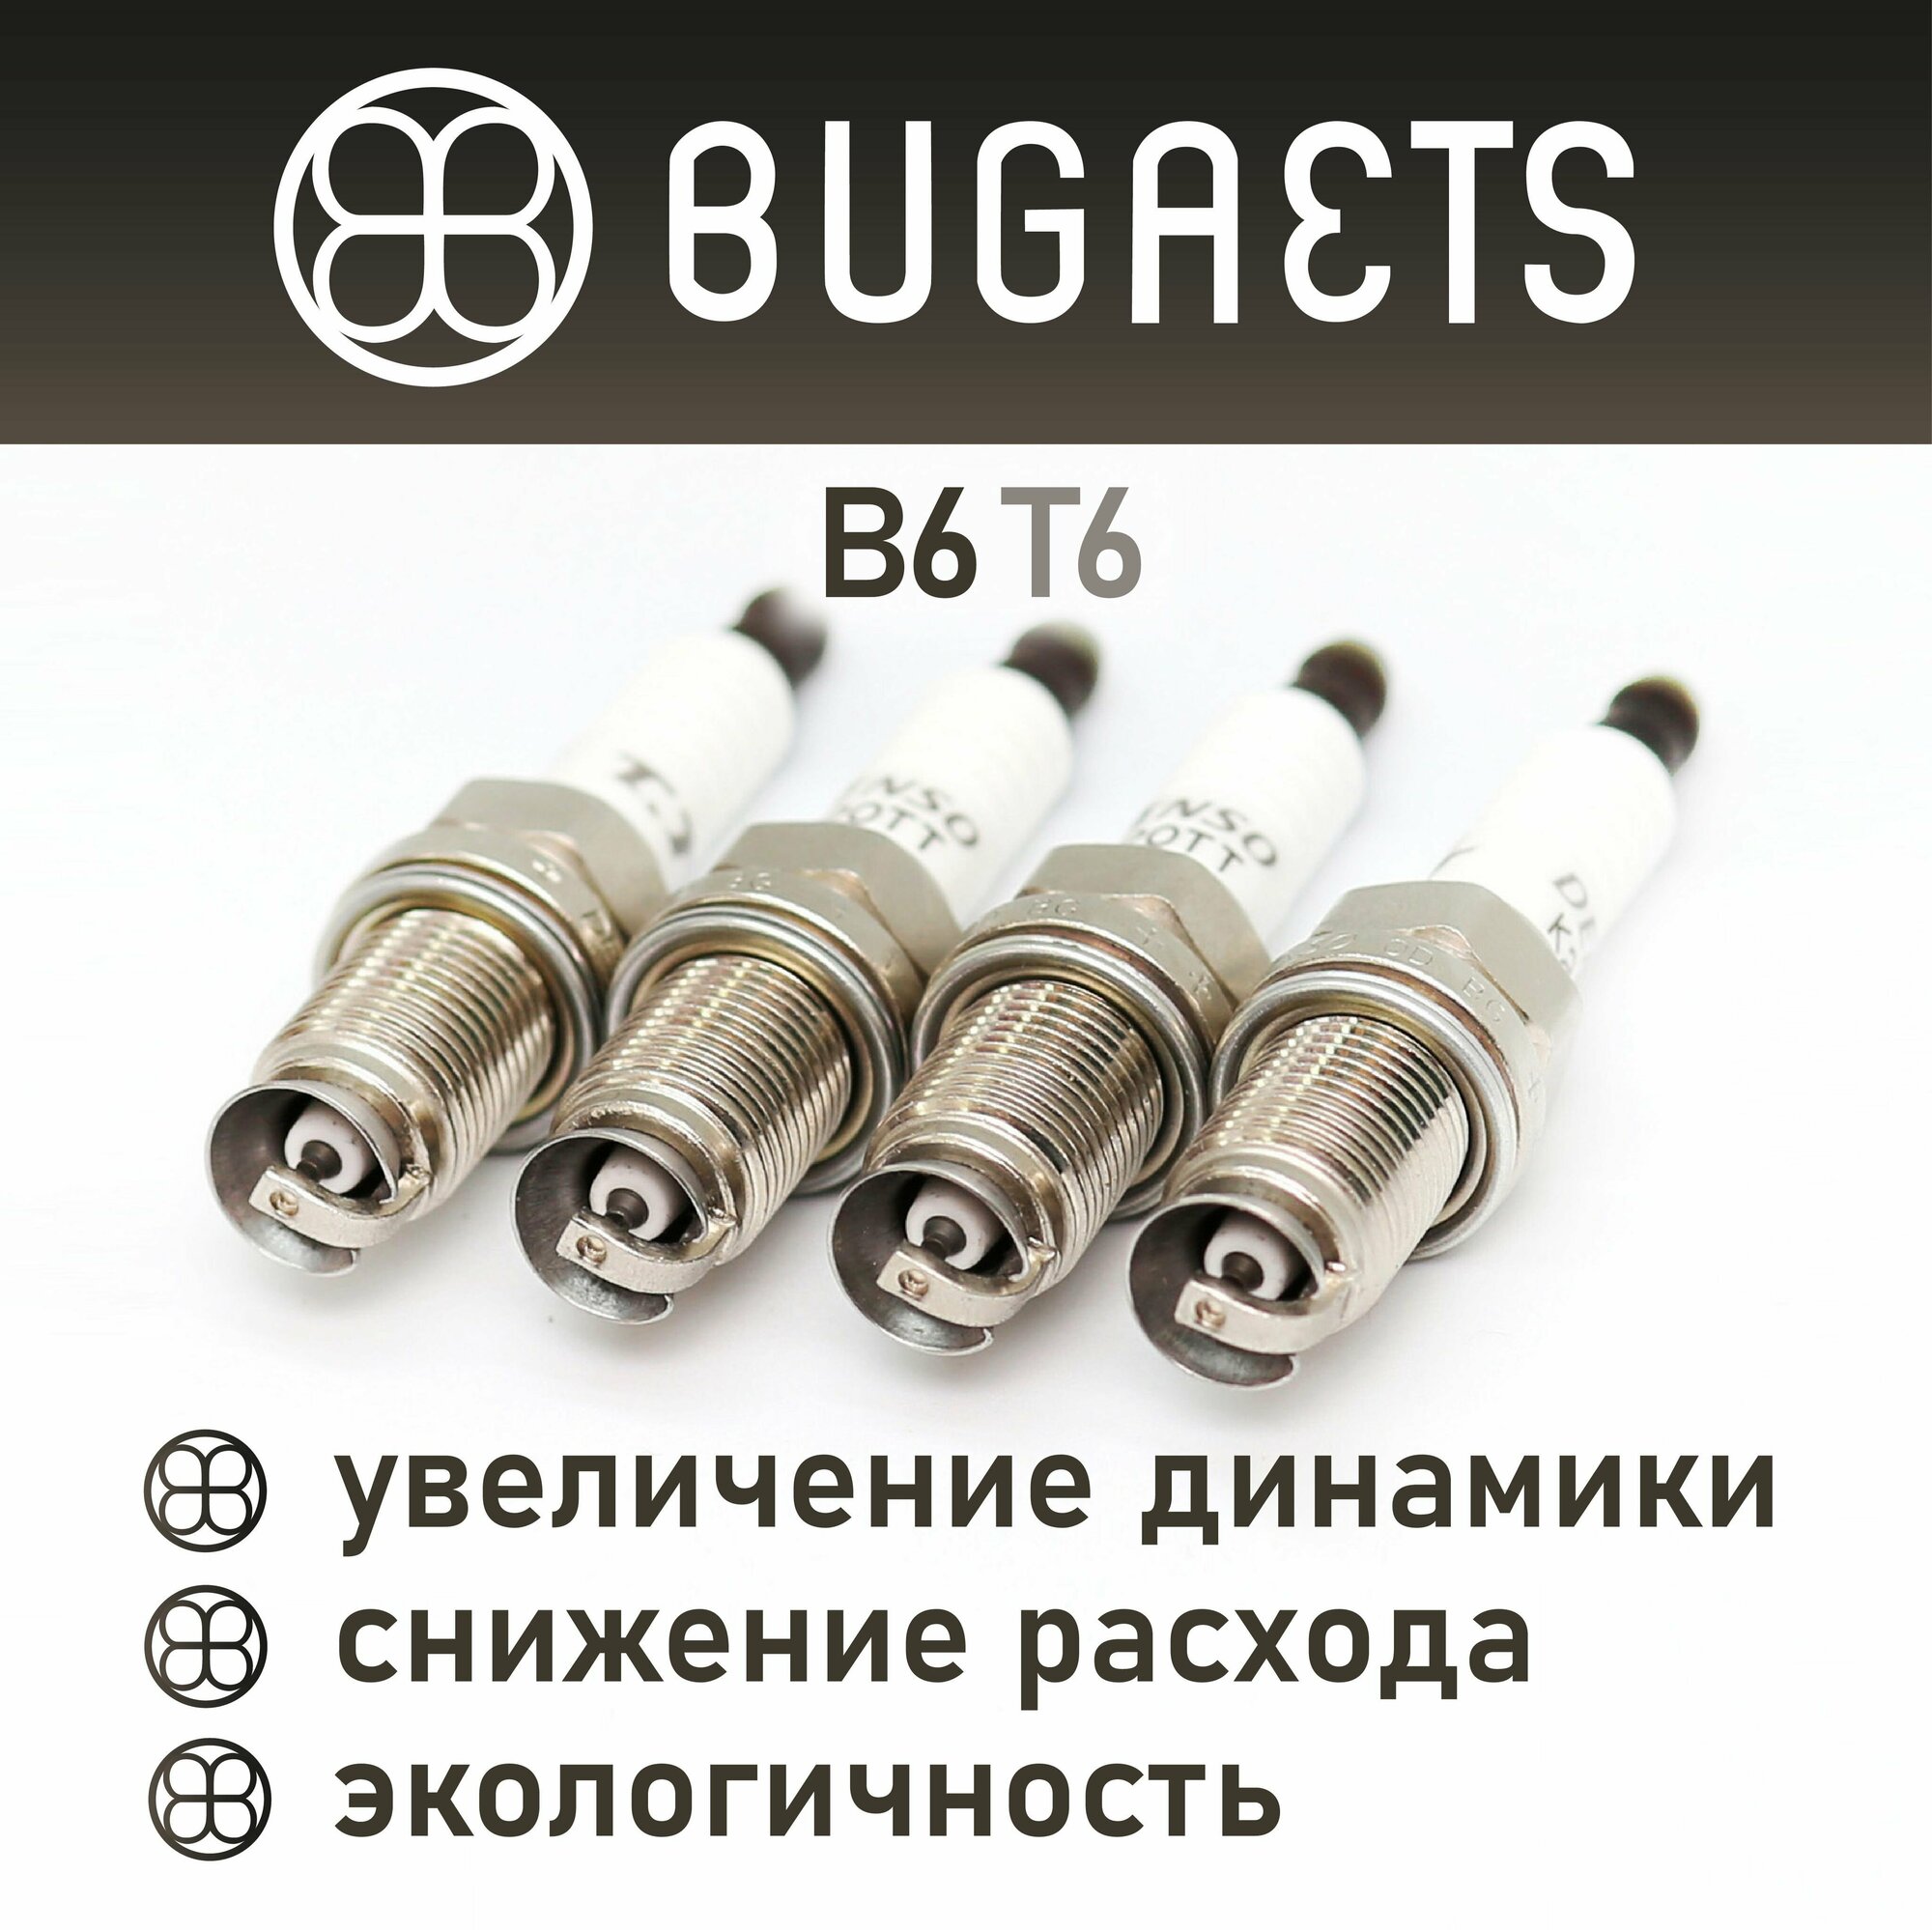 Свечи зажигания B6T6 тюнингованные Bugaets факельные - 4 шт.